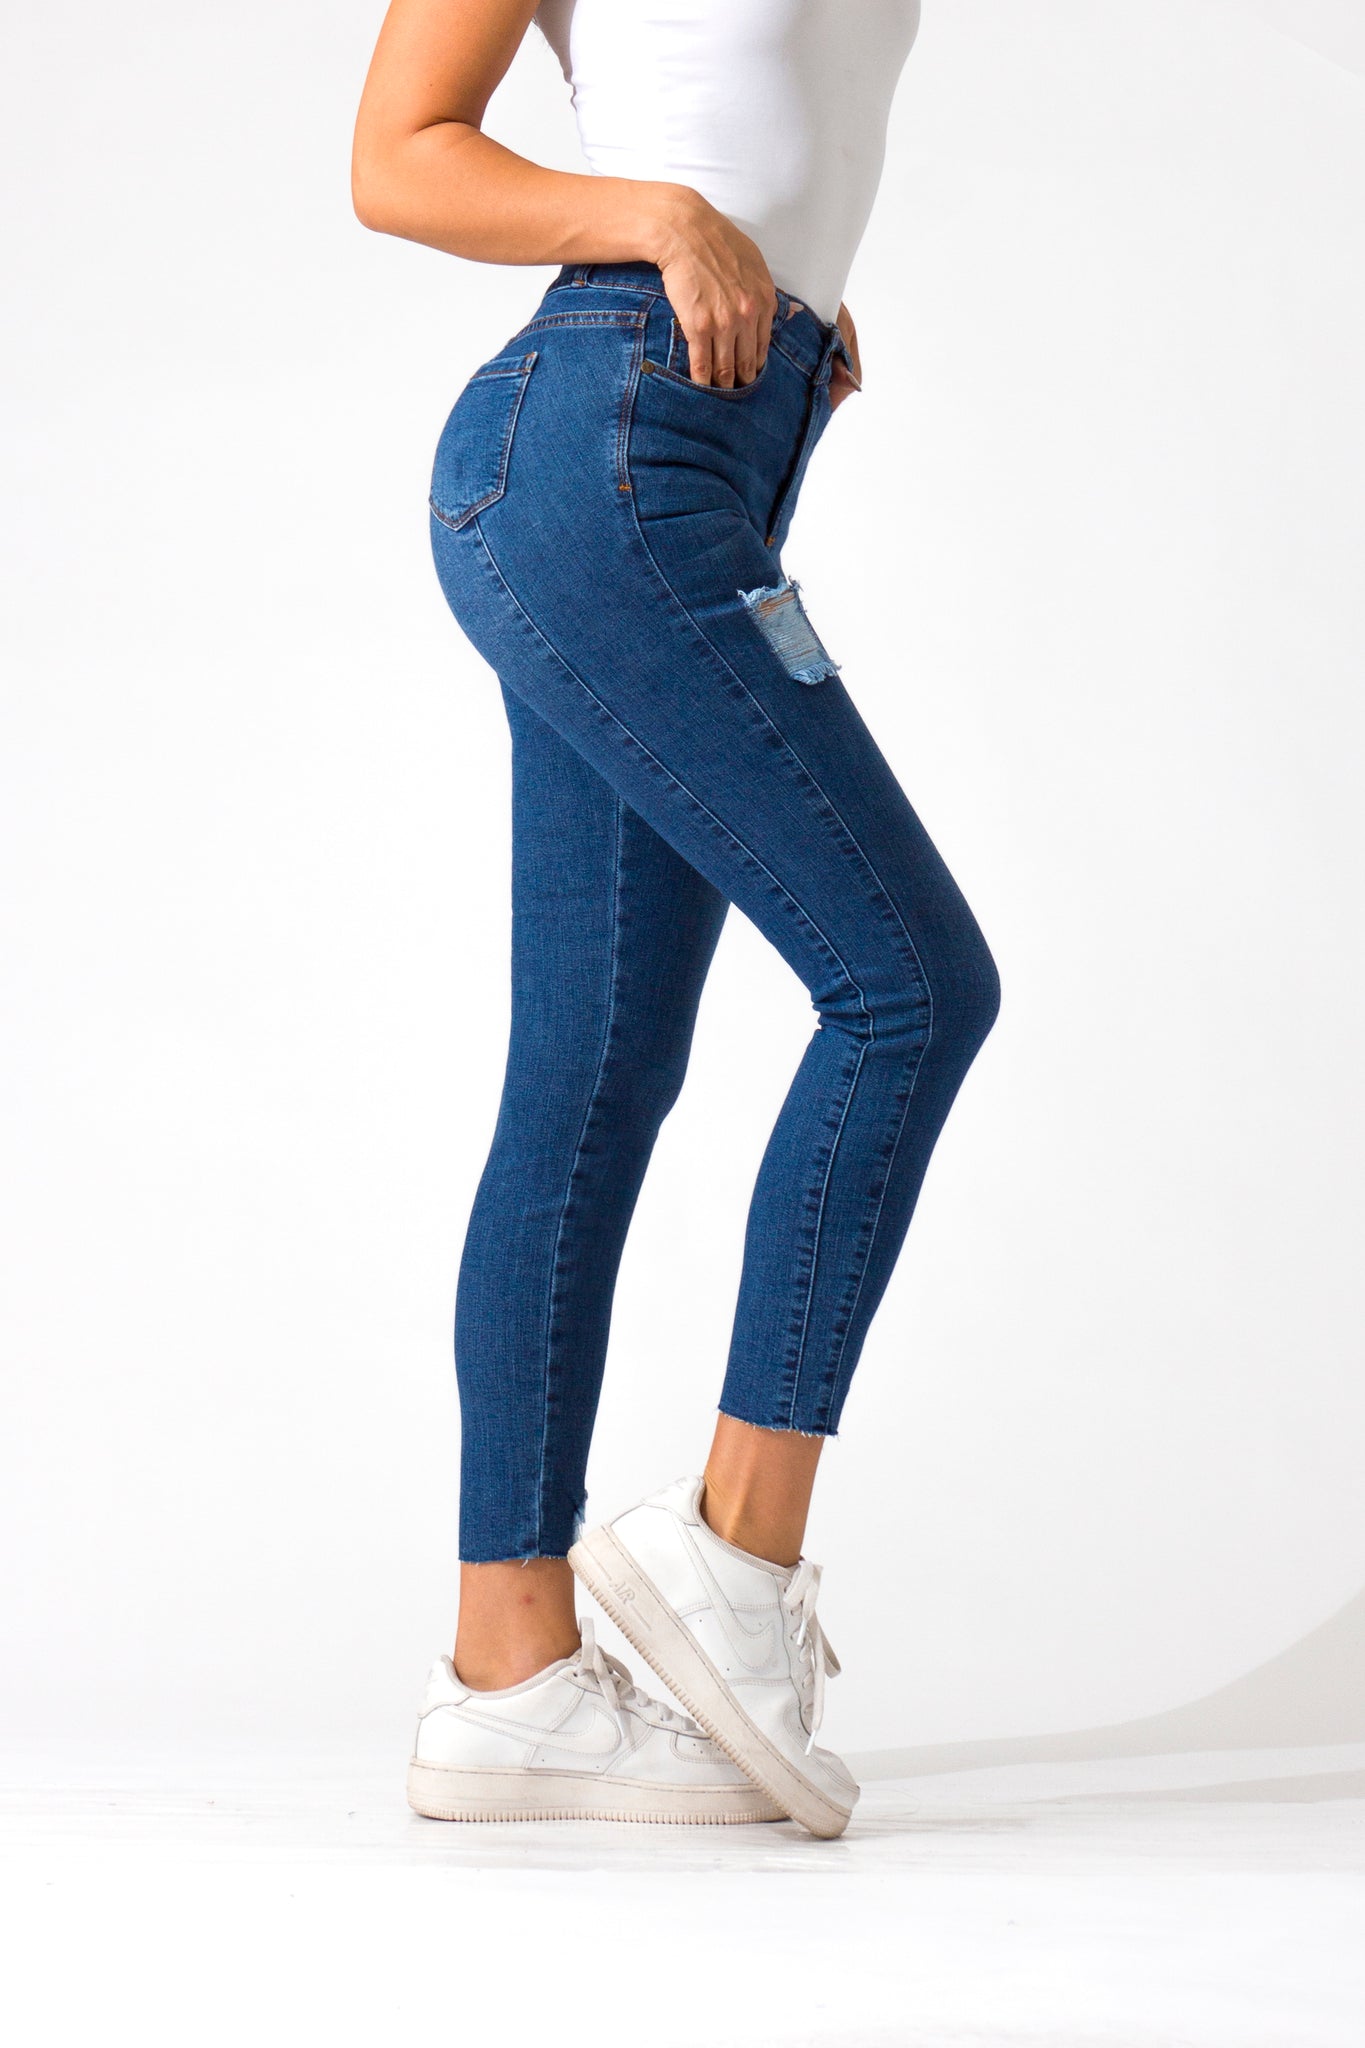 OHPOMP!® Cintura Media Skinny Jeans Ankle Azul Medio D1486